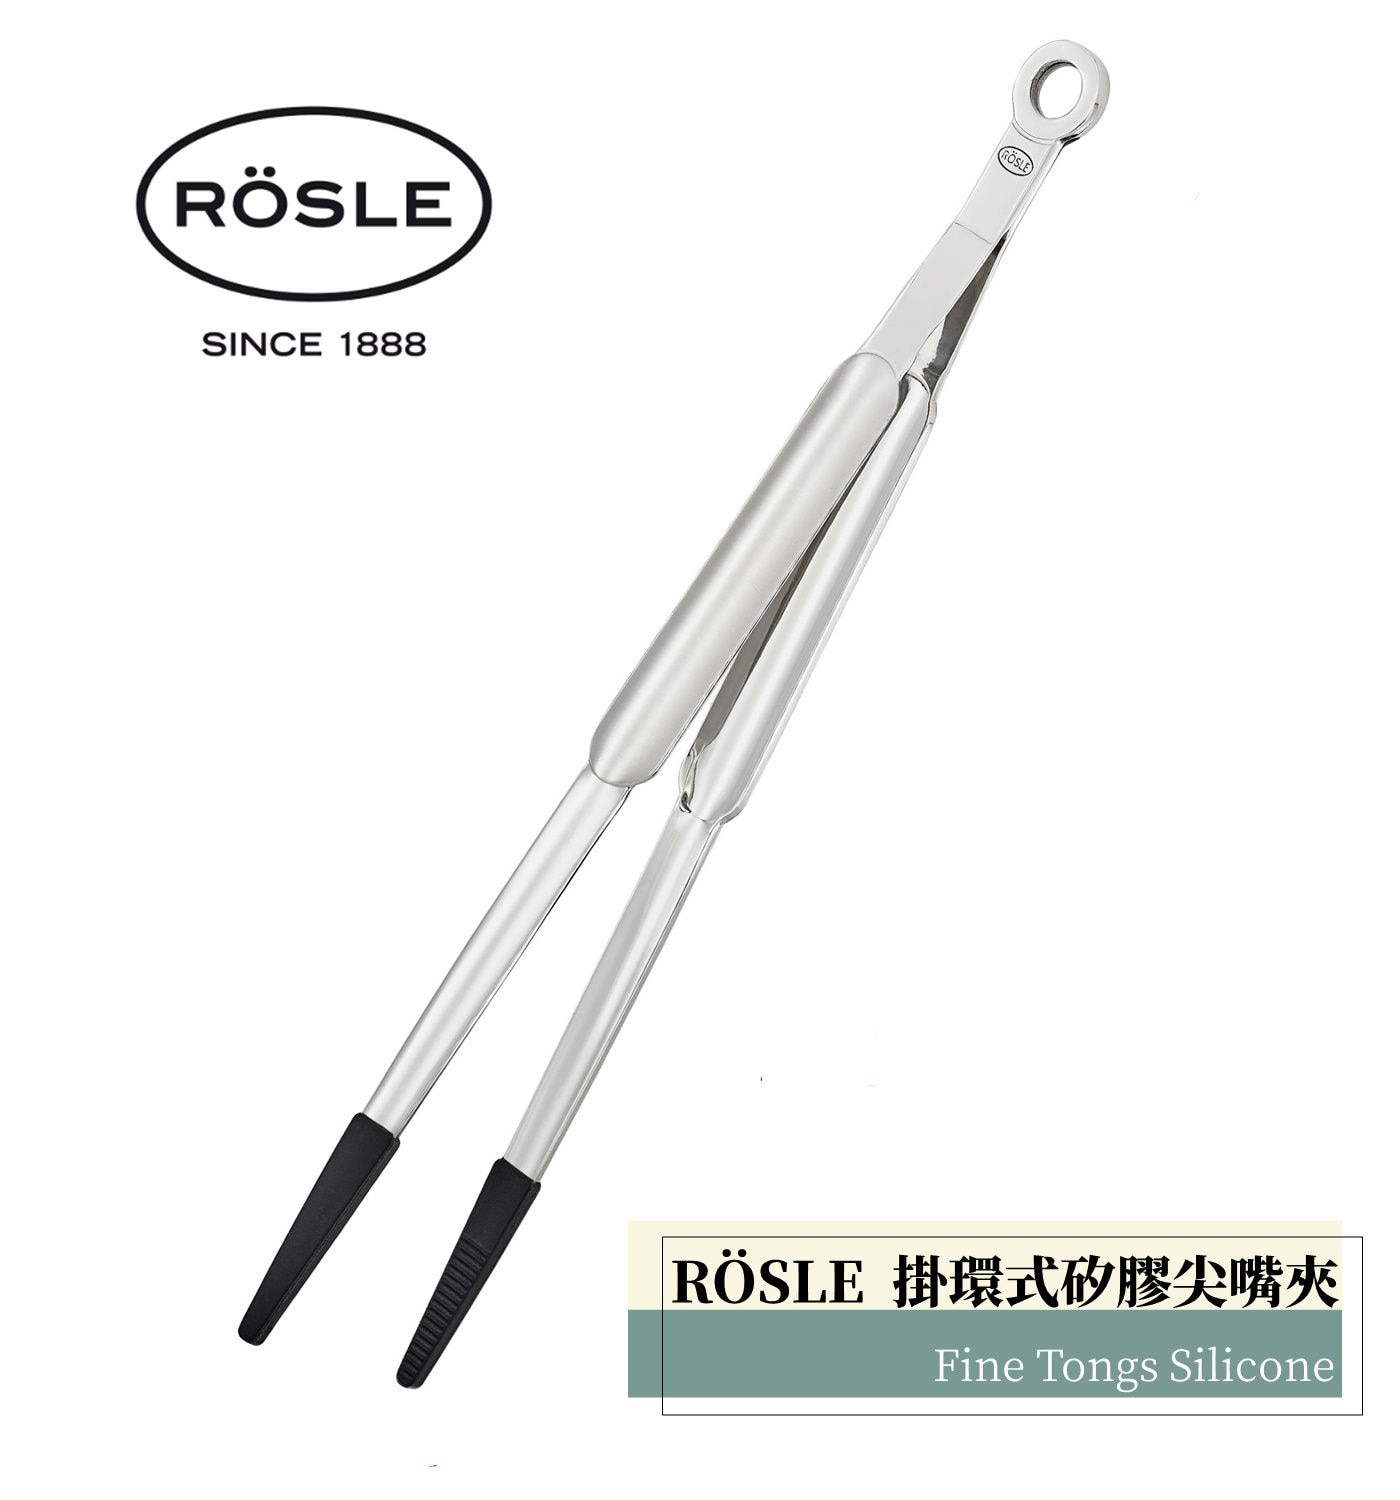 Rosle掛環式矽膠尖嘴夾平衡的彈力與精細的尖嘴設計.適用於各式菜餚糕點的裝飾與擺盤.握柄後方掛環設計方便收納